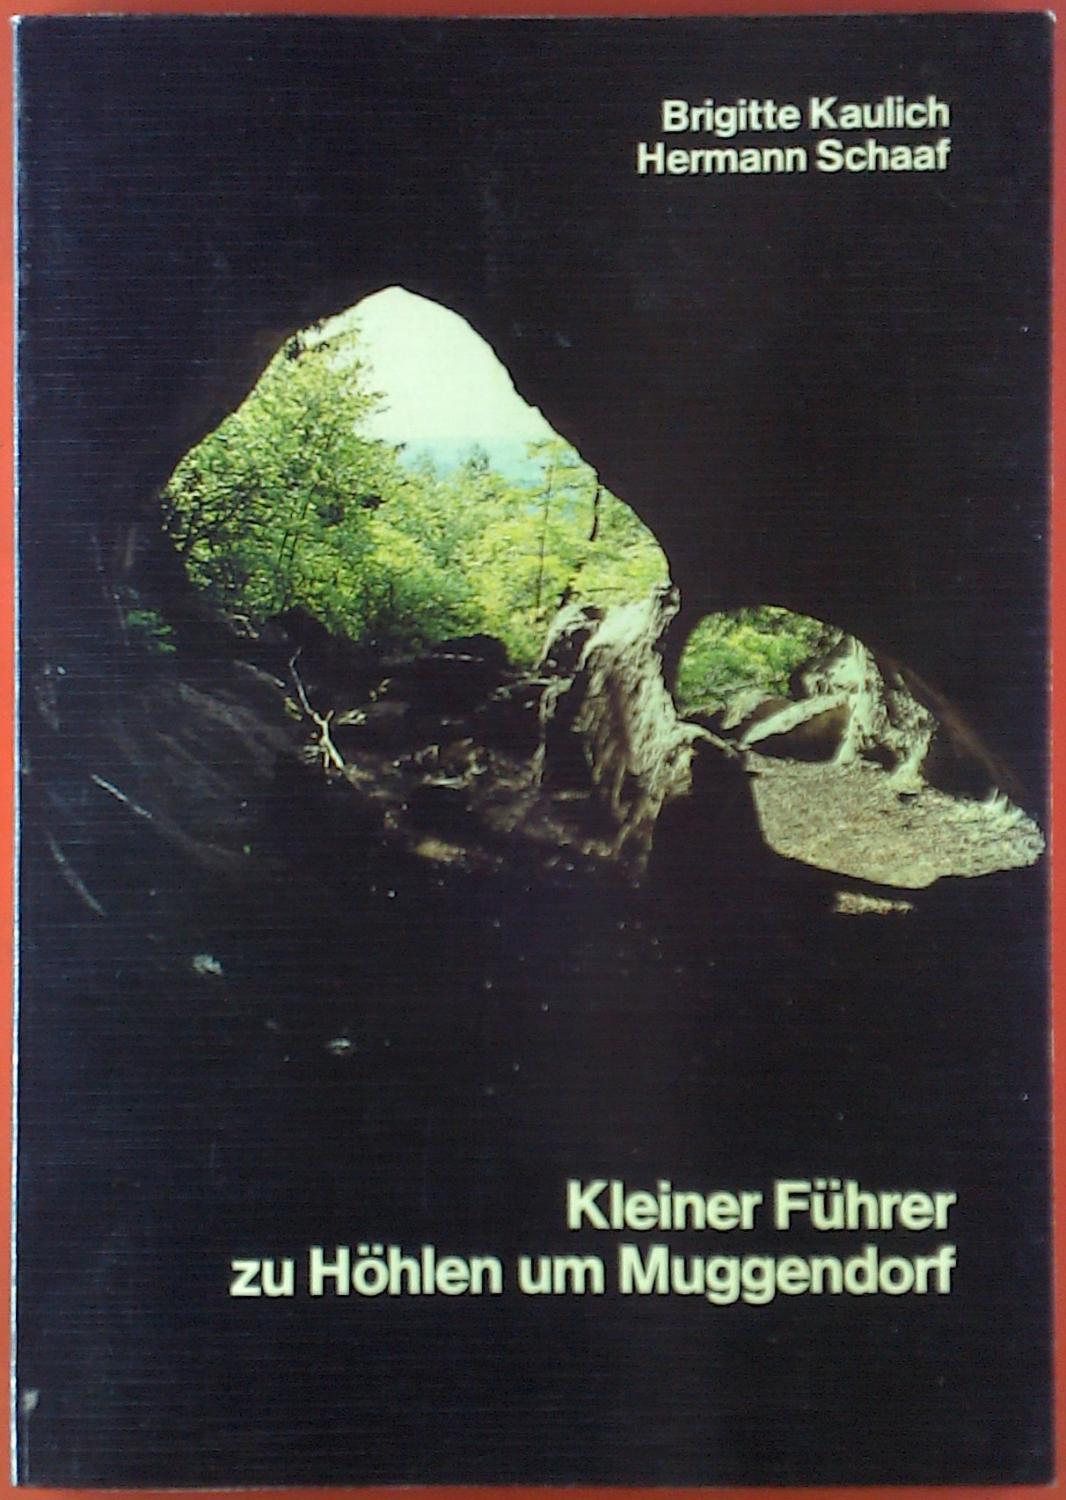 Kleiner Führer zu Höhlen um Muggendorf. - Brigitte Kaulich, Hermann Schaaf.